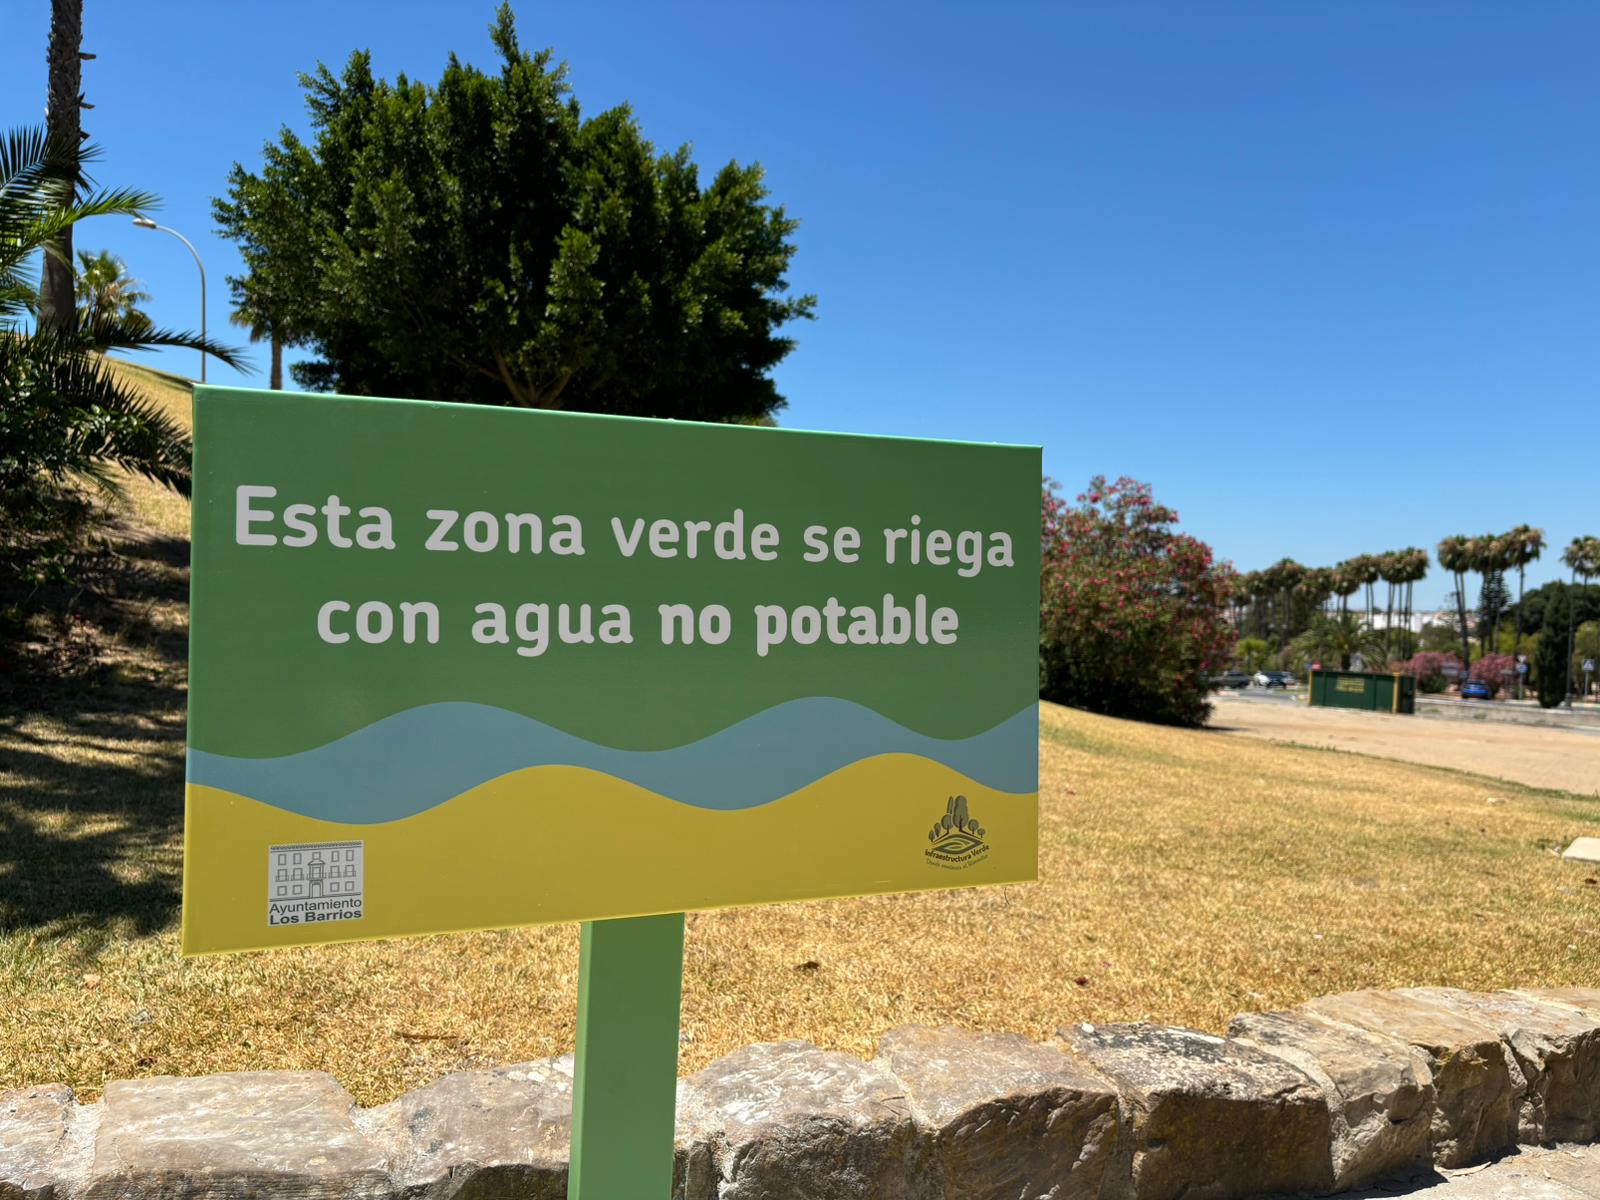 Las restricciones de agua afectan ya a las praderas de césped de las zonas verdes de Los Barrios.